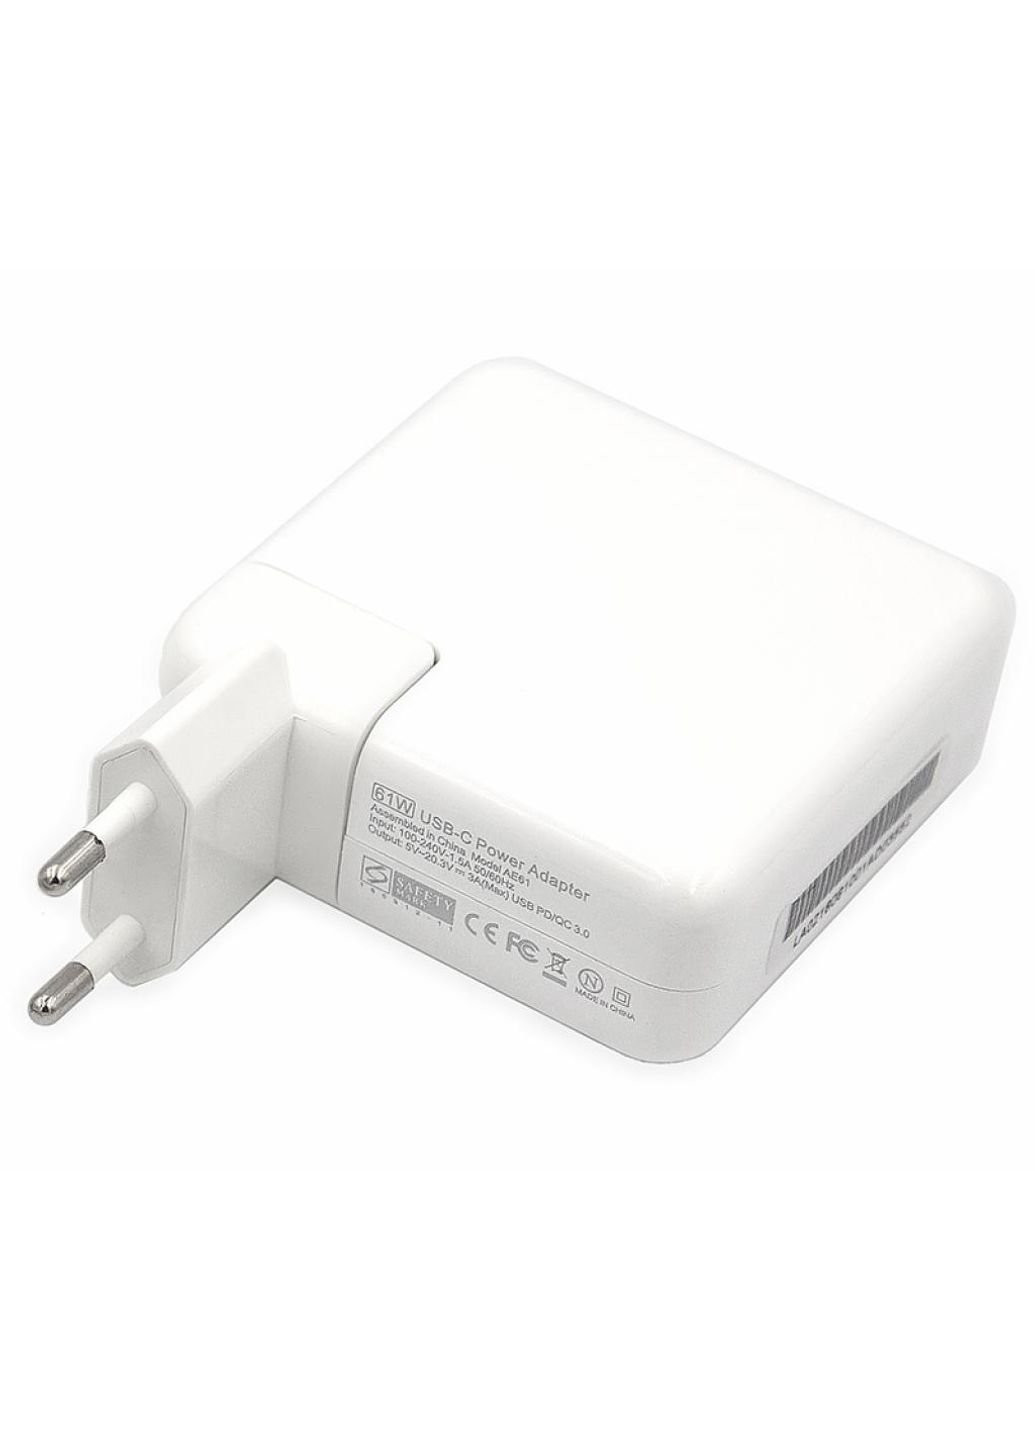 Джерело живлення до силового апарату Apple 220V, 20V 61W ноутбук (USB TYPE-C) (AP61HCUSB) PowerPlant apple 220v, 20v 61w (usb type-c) (250053772)